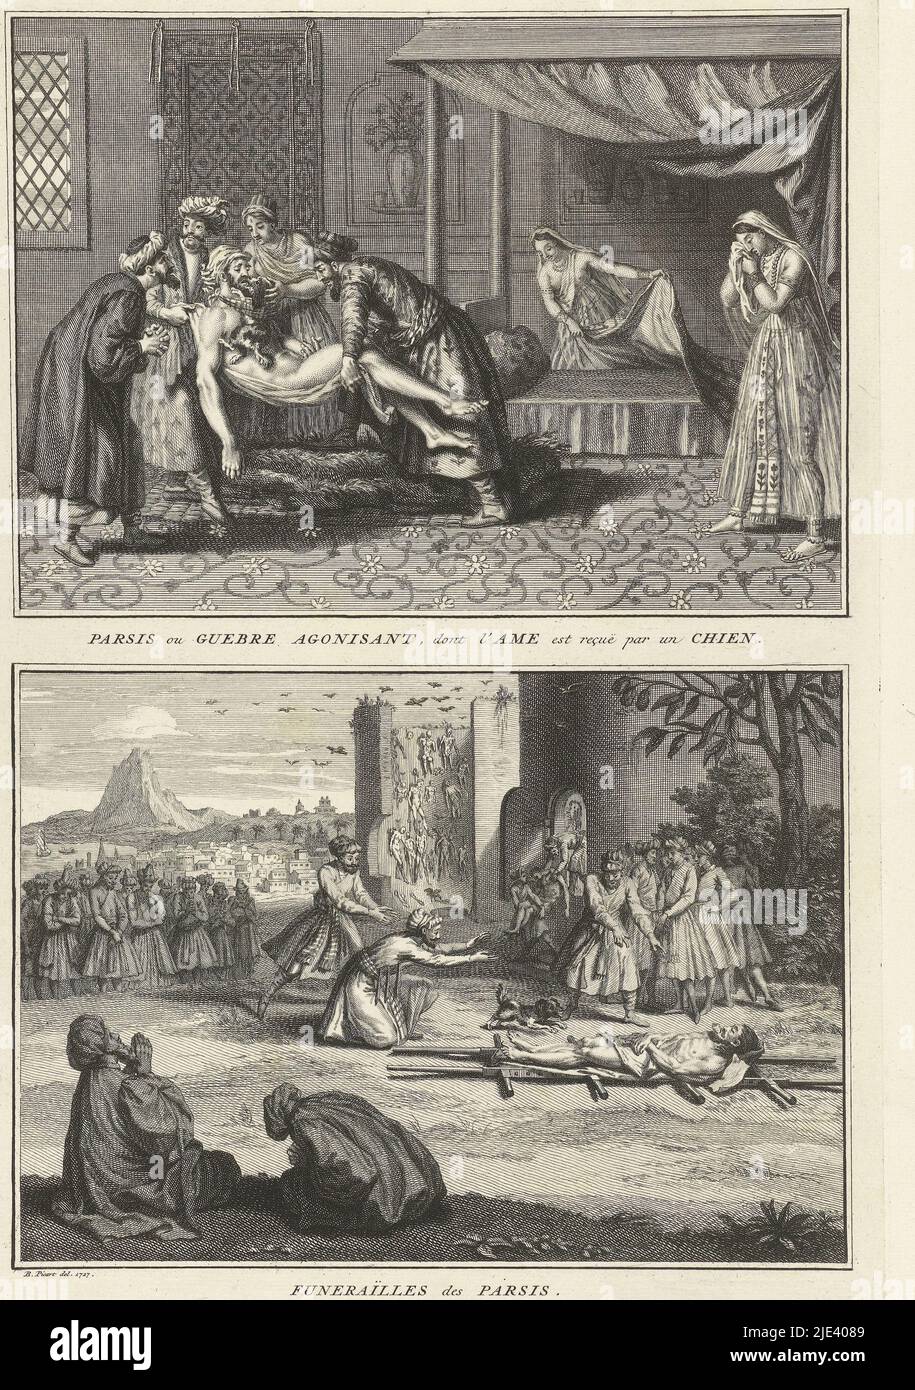 Persische Bestattungsriten, Bernard Picart (Werkstatt von), nach Bernard Picart, 1727, Blatt mit zwei Darstellungen persischer Bestattungsriten. Oben: Ein Hund ist um den Körper eines sterbenden Mannes gebunden, um seine Seele zu empfangen. Unten: Die Leiche liegt auf einer Bahre, Beute von Vögeln. Ein Hund wird zu dem Toten gelockt. Es ist ein verheißungsvolles Omen, wenn der Hund das Stück Brot isst, das dem Verstorbenen in den Mund gelegt wurde. Unter den Darstellungen eine französische Beschriftung., Druckerei: Bernard Picart, (Werkstatt von), Zeichner: Bernard Picart, (auf Objekt erwähnt), Amsterdam, 1727, Papier, Ätzen Stockfoto